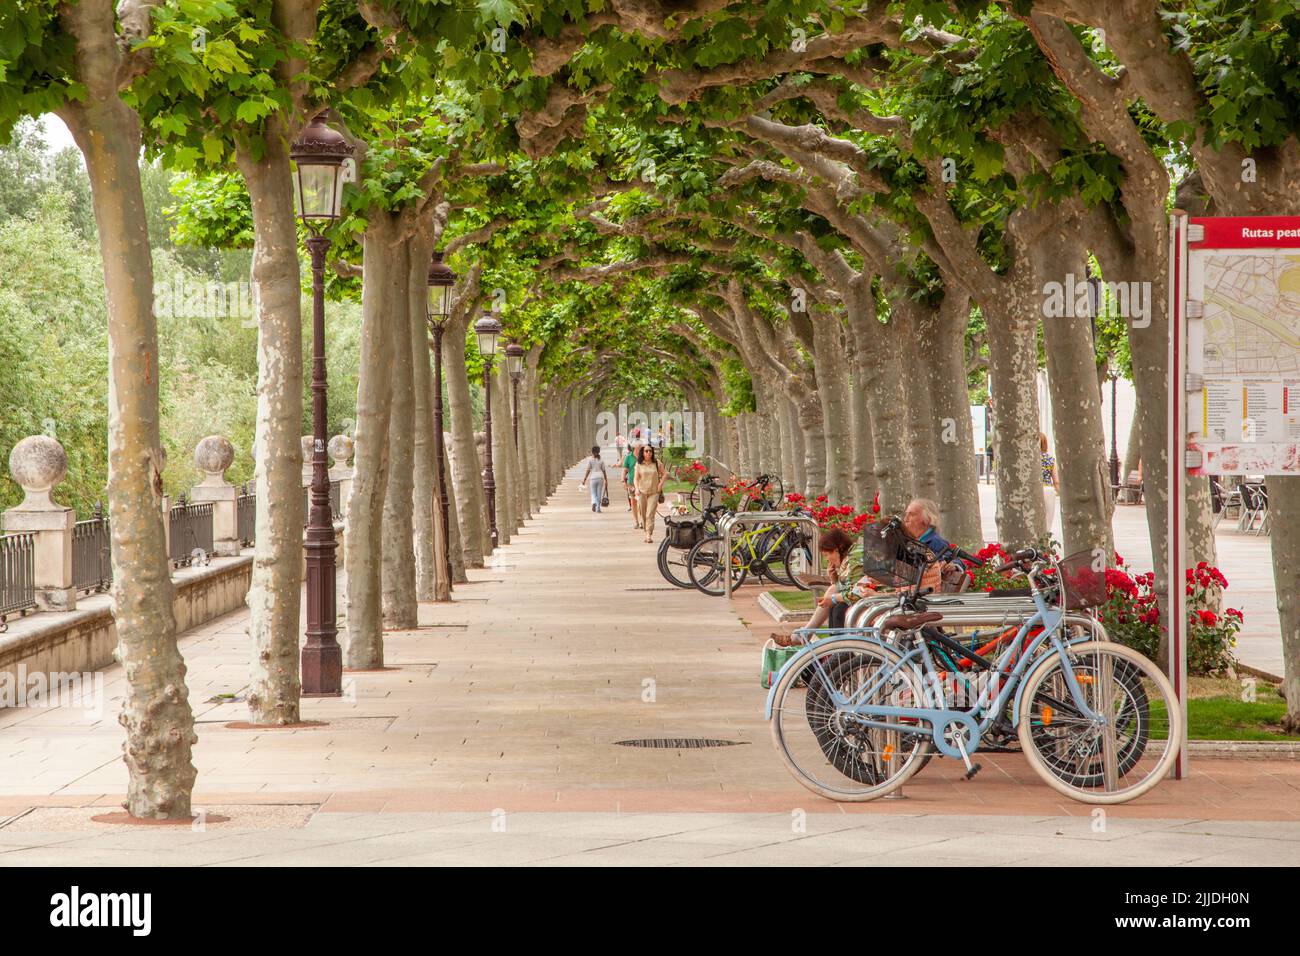 Der von Bäumen gesäumte Fußgängerweg. Paseo del Espolon in der spanischen Stadt Burgos Spanien Stockfoto